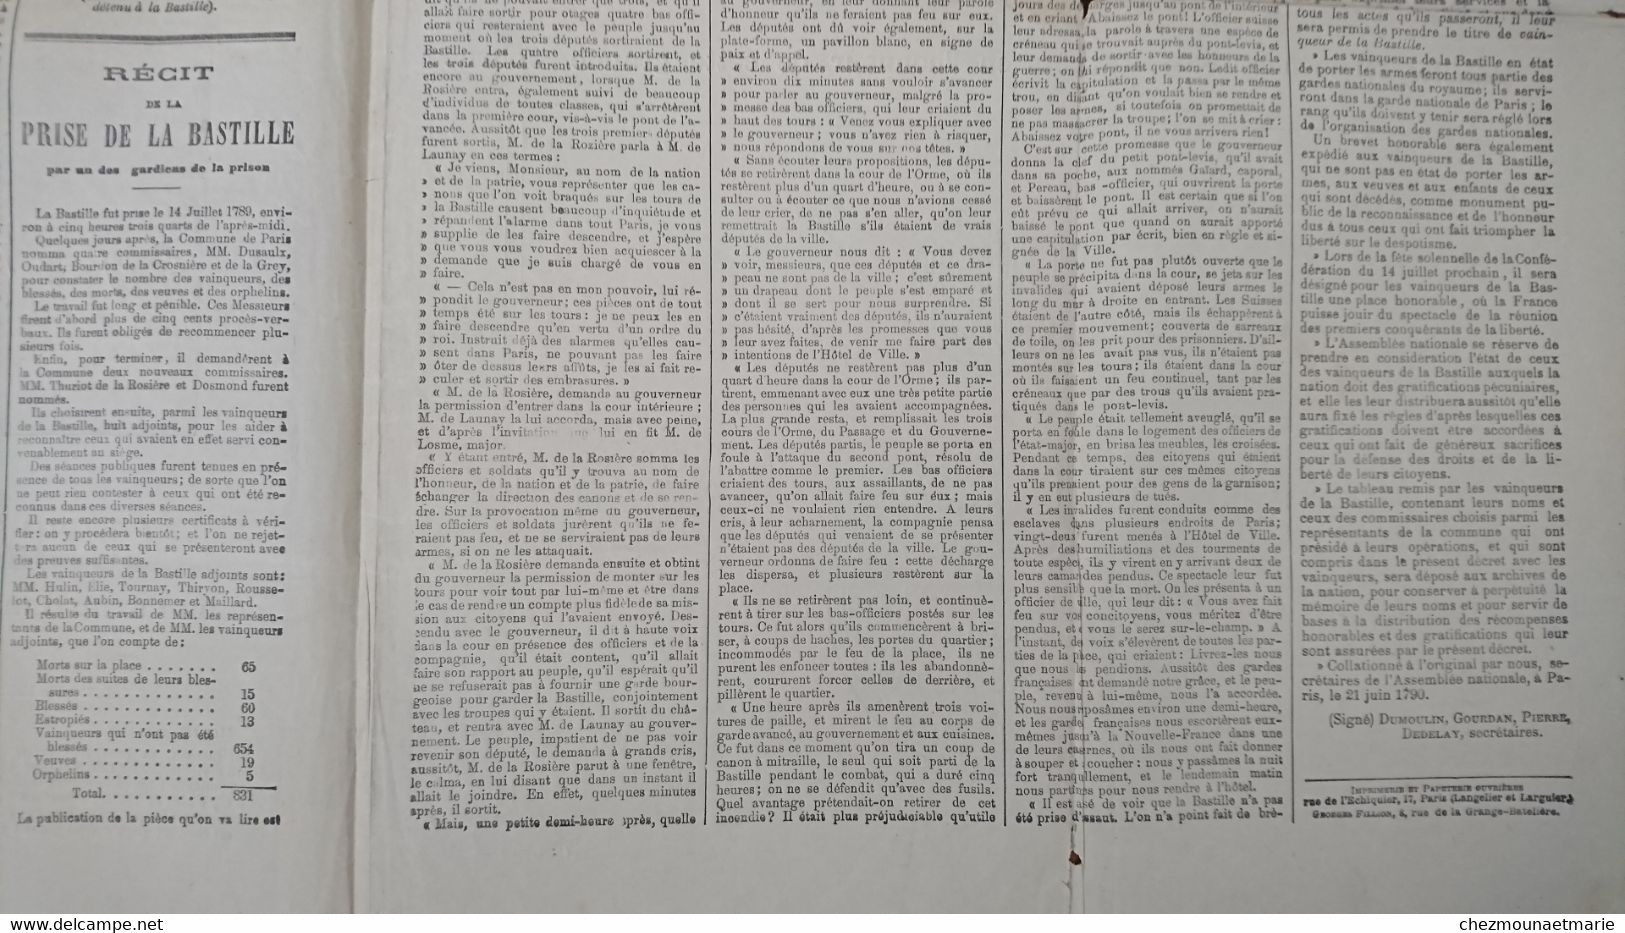 LE PETIT NORD JOURNAL POLITIQUE - SUPPLEMENT SUR LE 12 ET 14 JUILLET 1789 - Zonder Classificatie